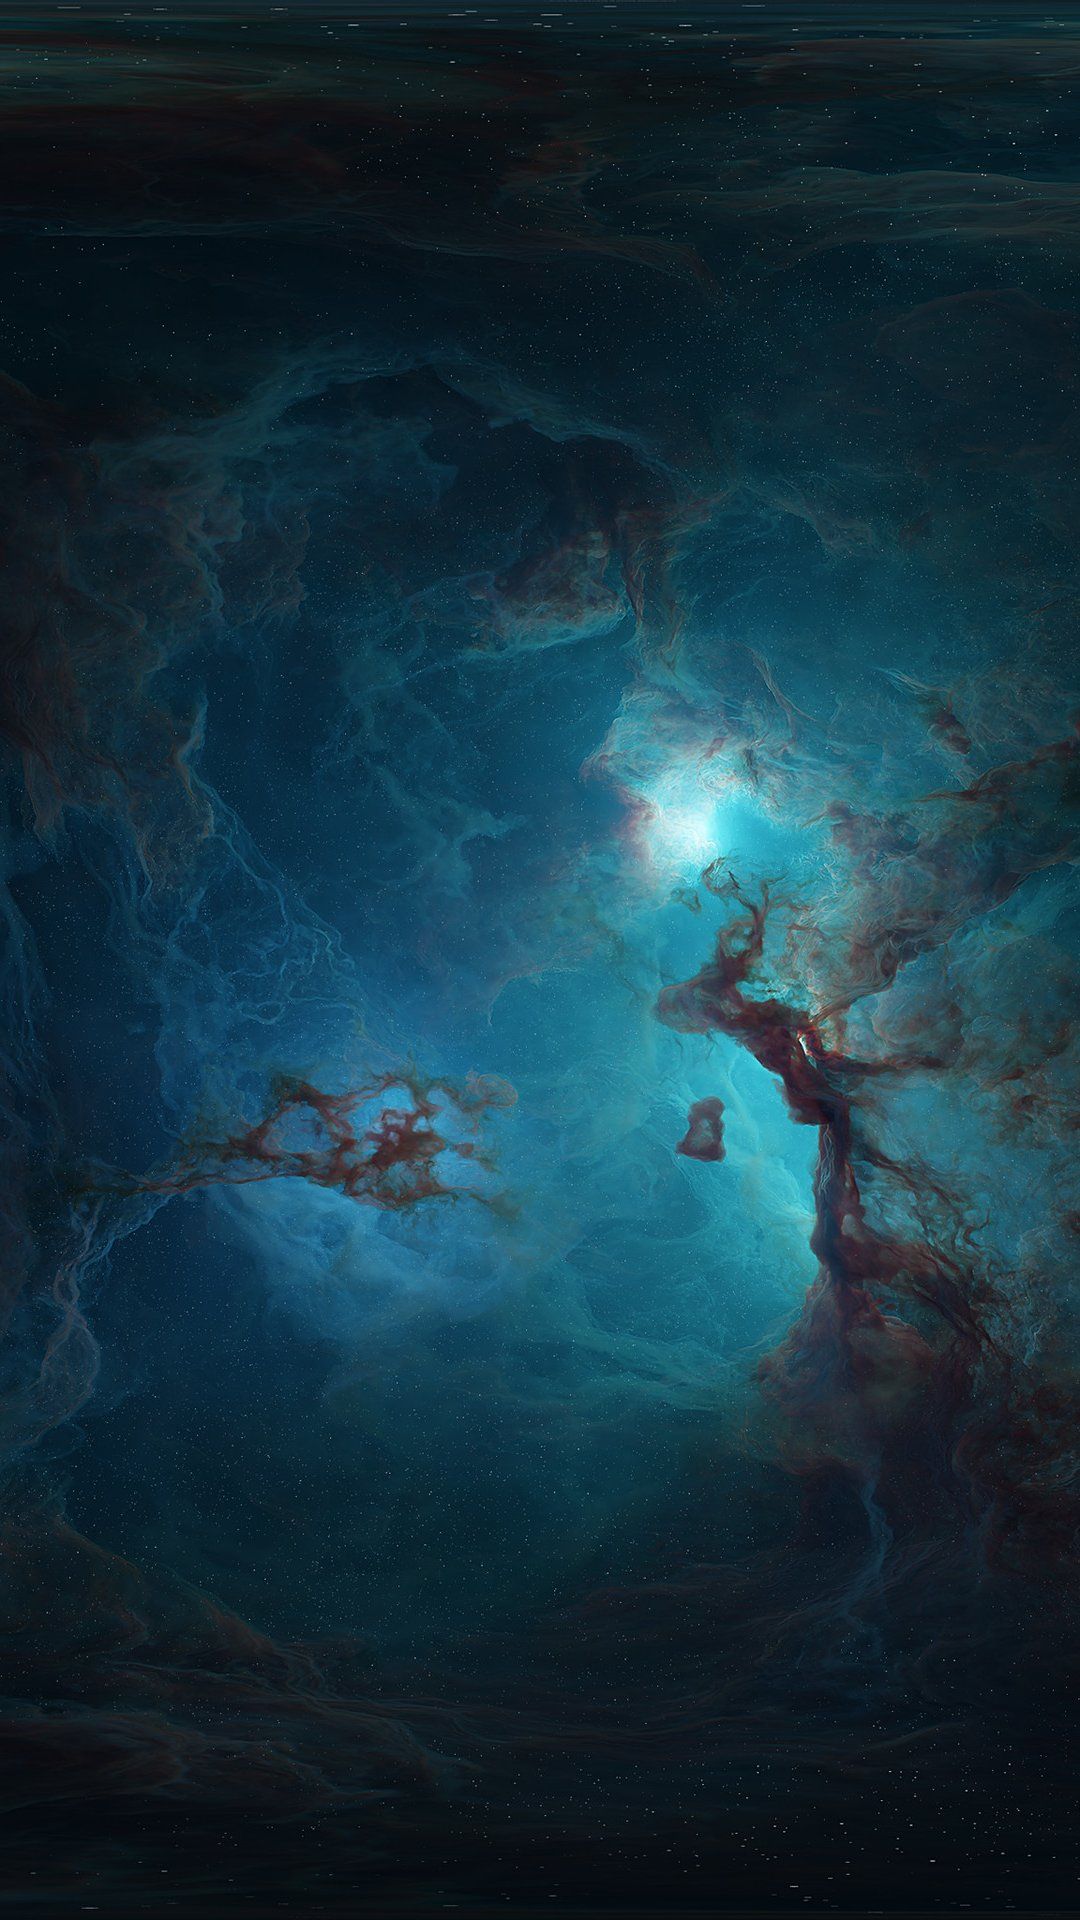 Nebula in space Wallpaper 4k Ultra HD